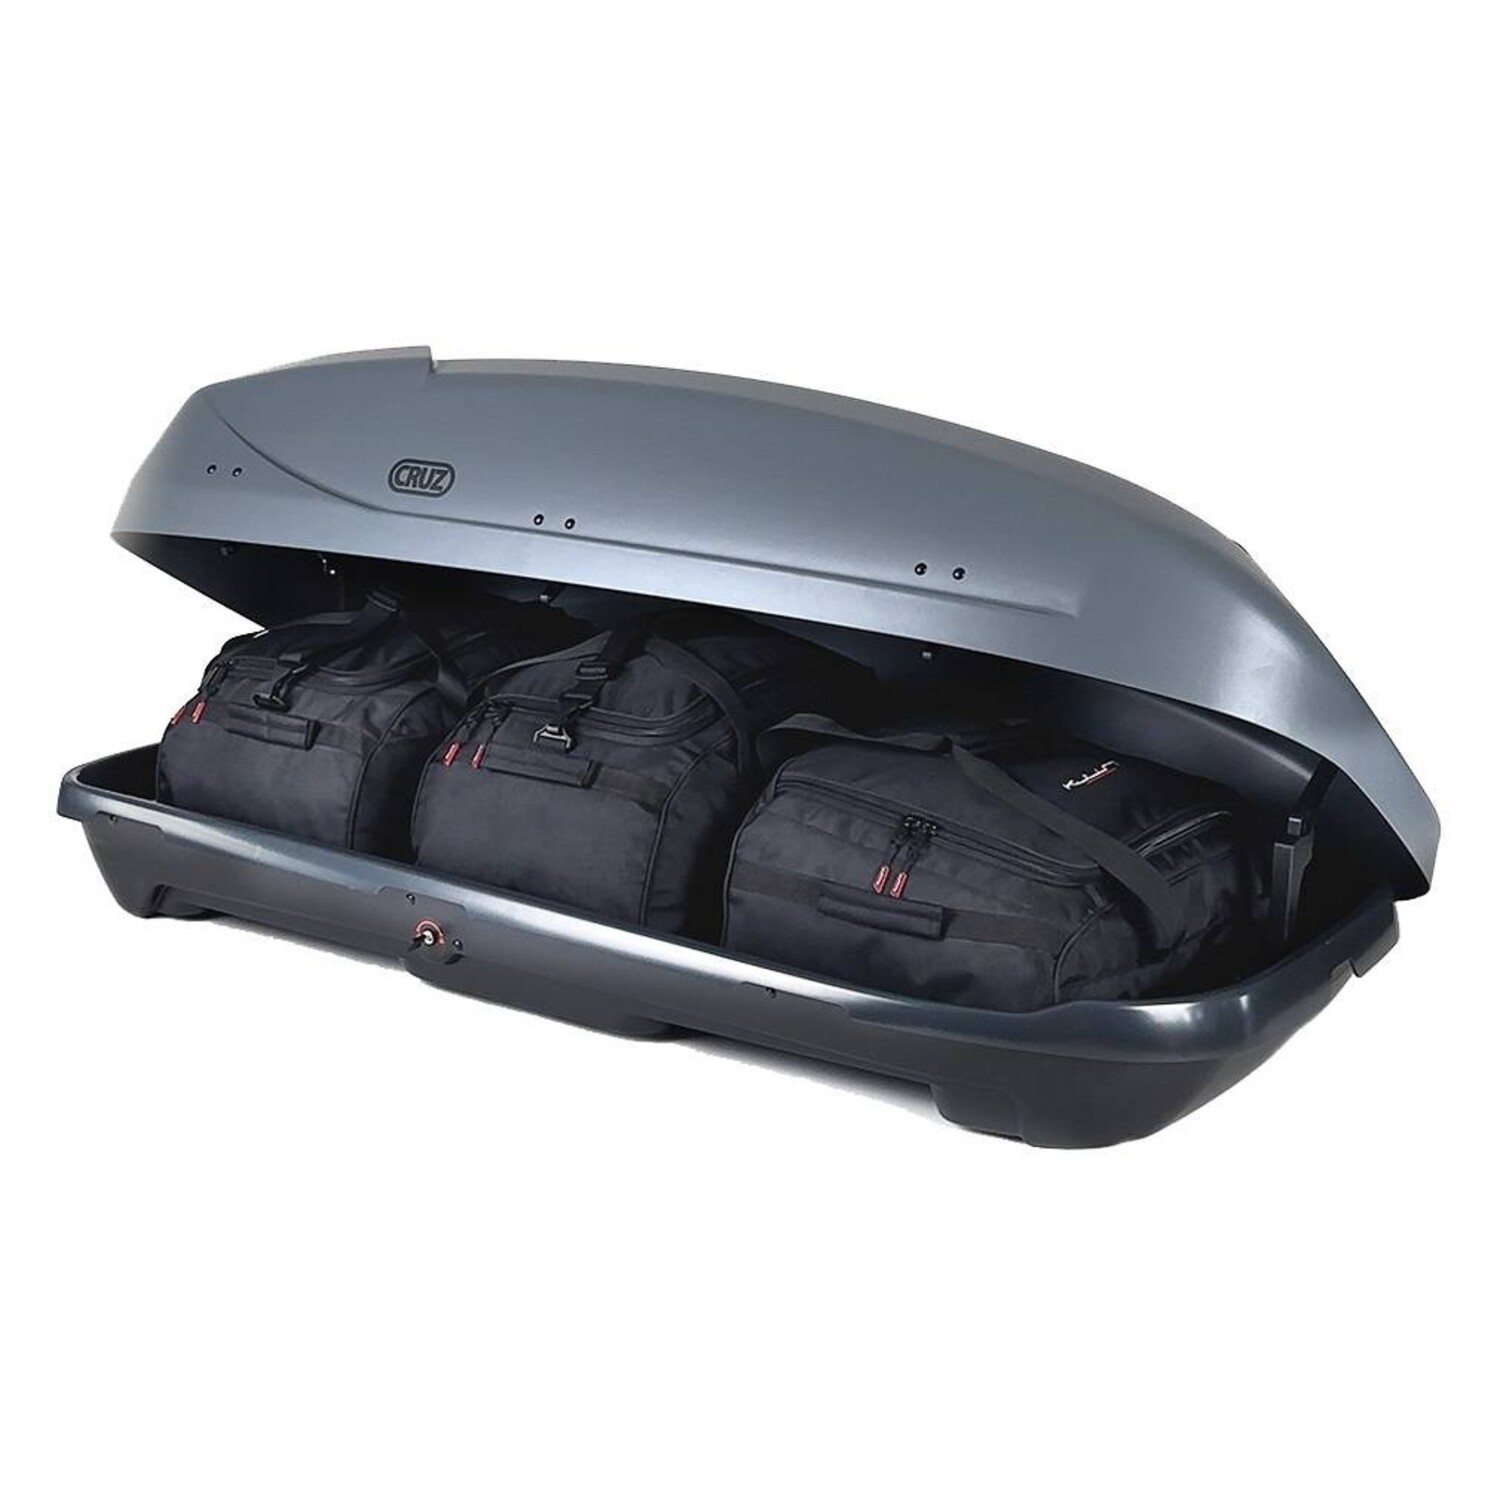 Universal Reisetaschen Set für Dachboxen Atera - Maluch Premium Autozubehör